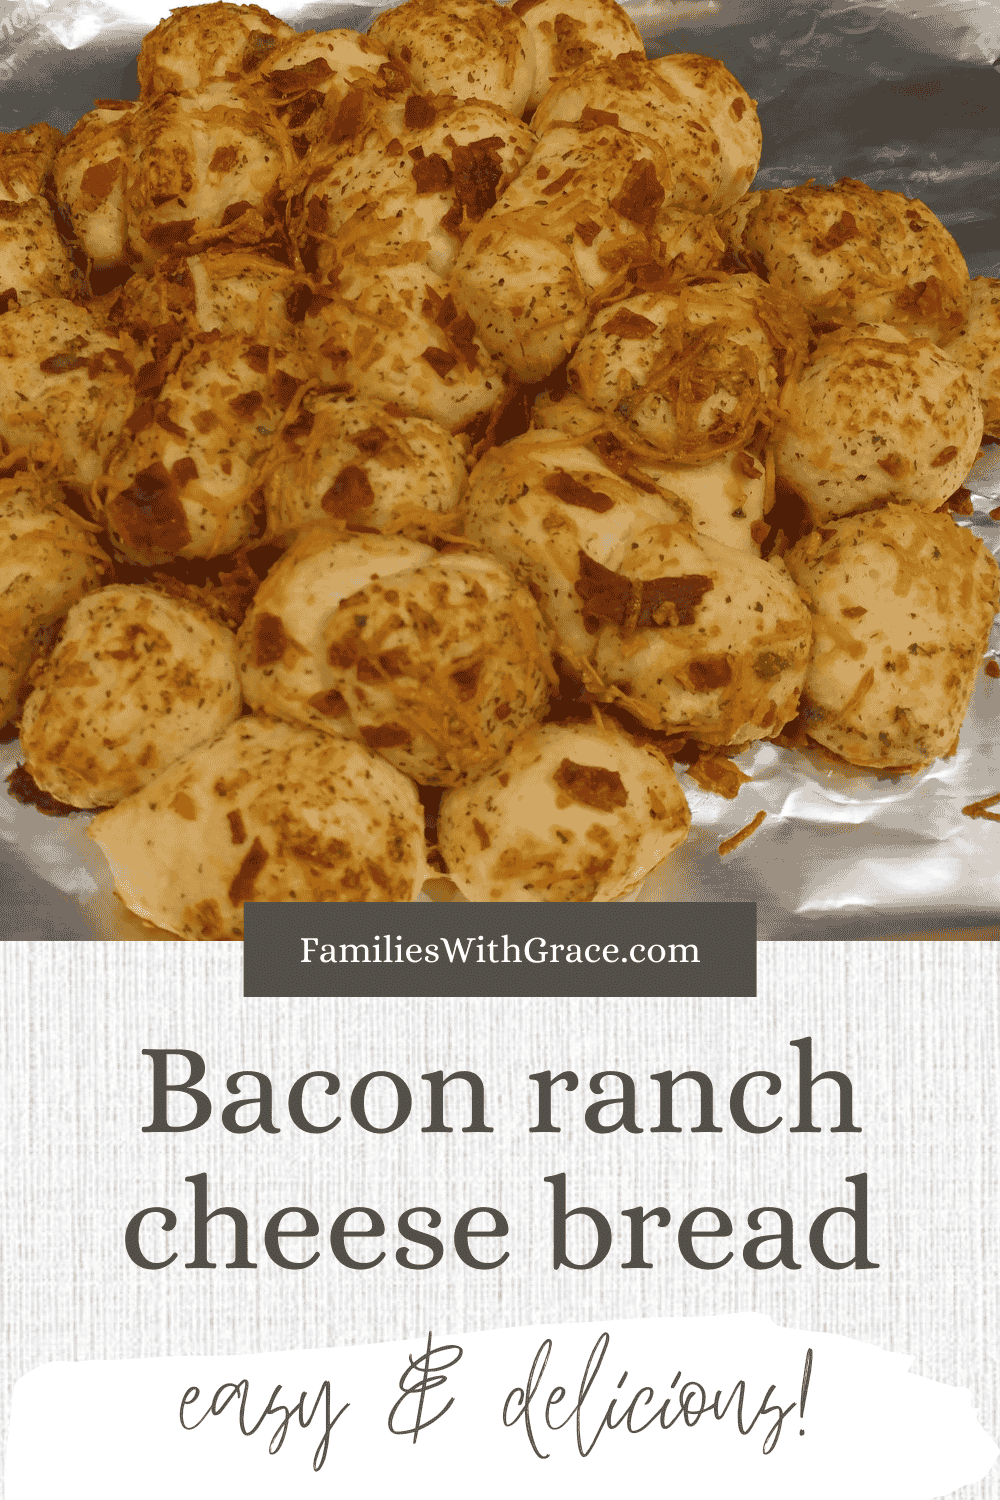 Bacon ranch cheese bread